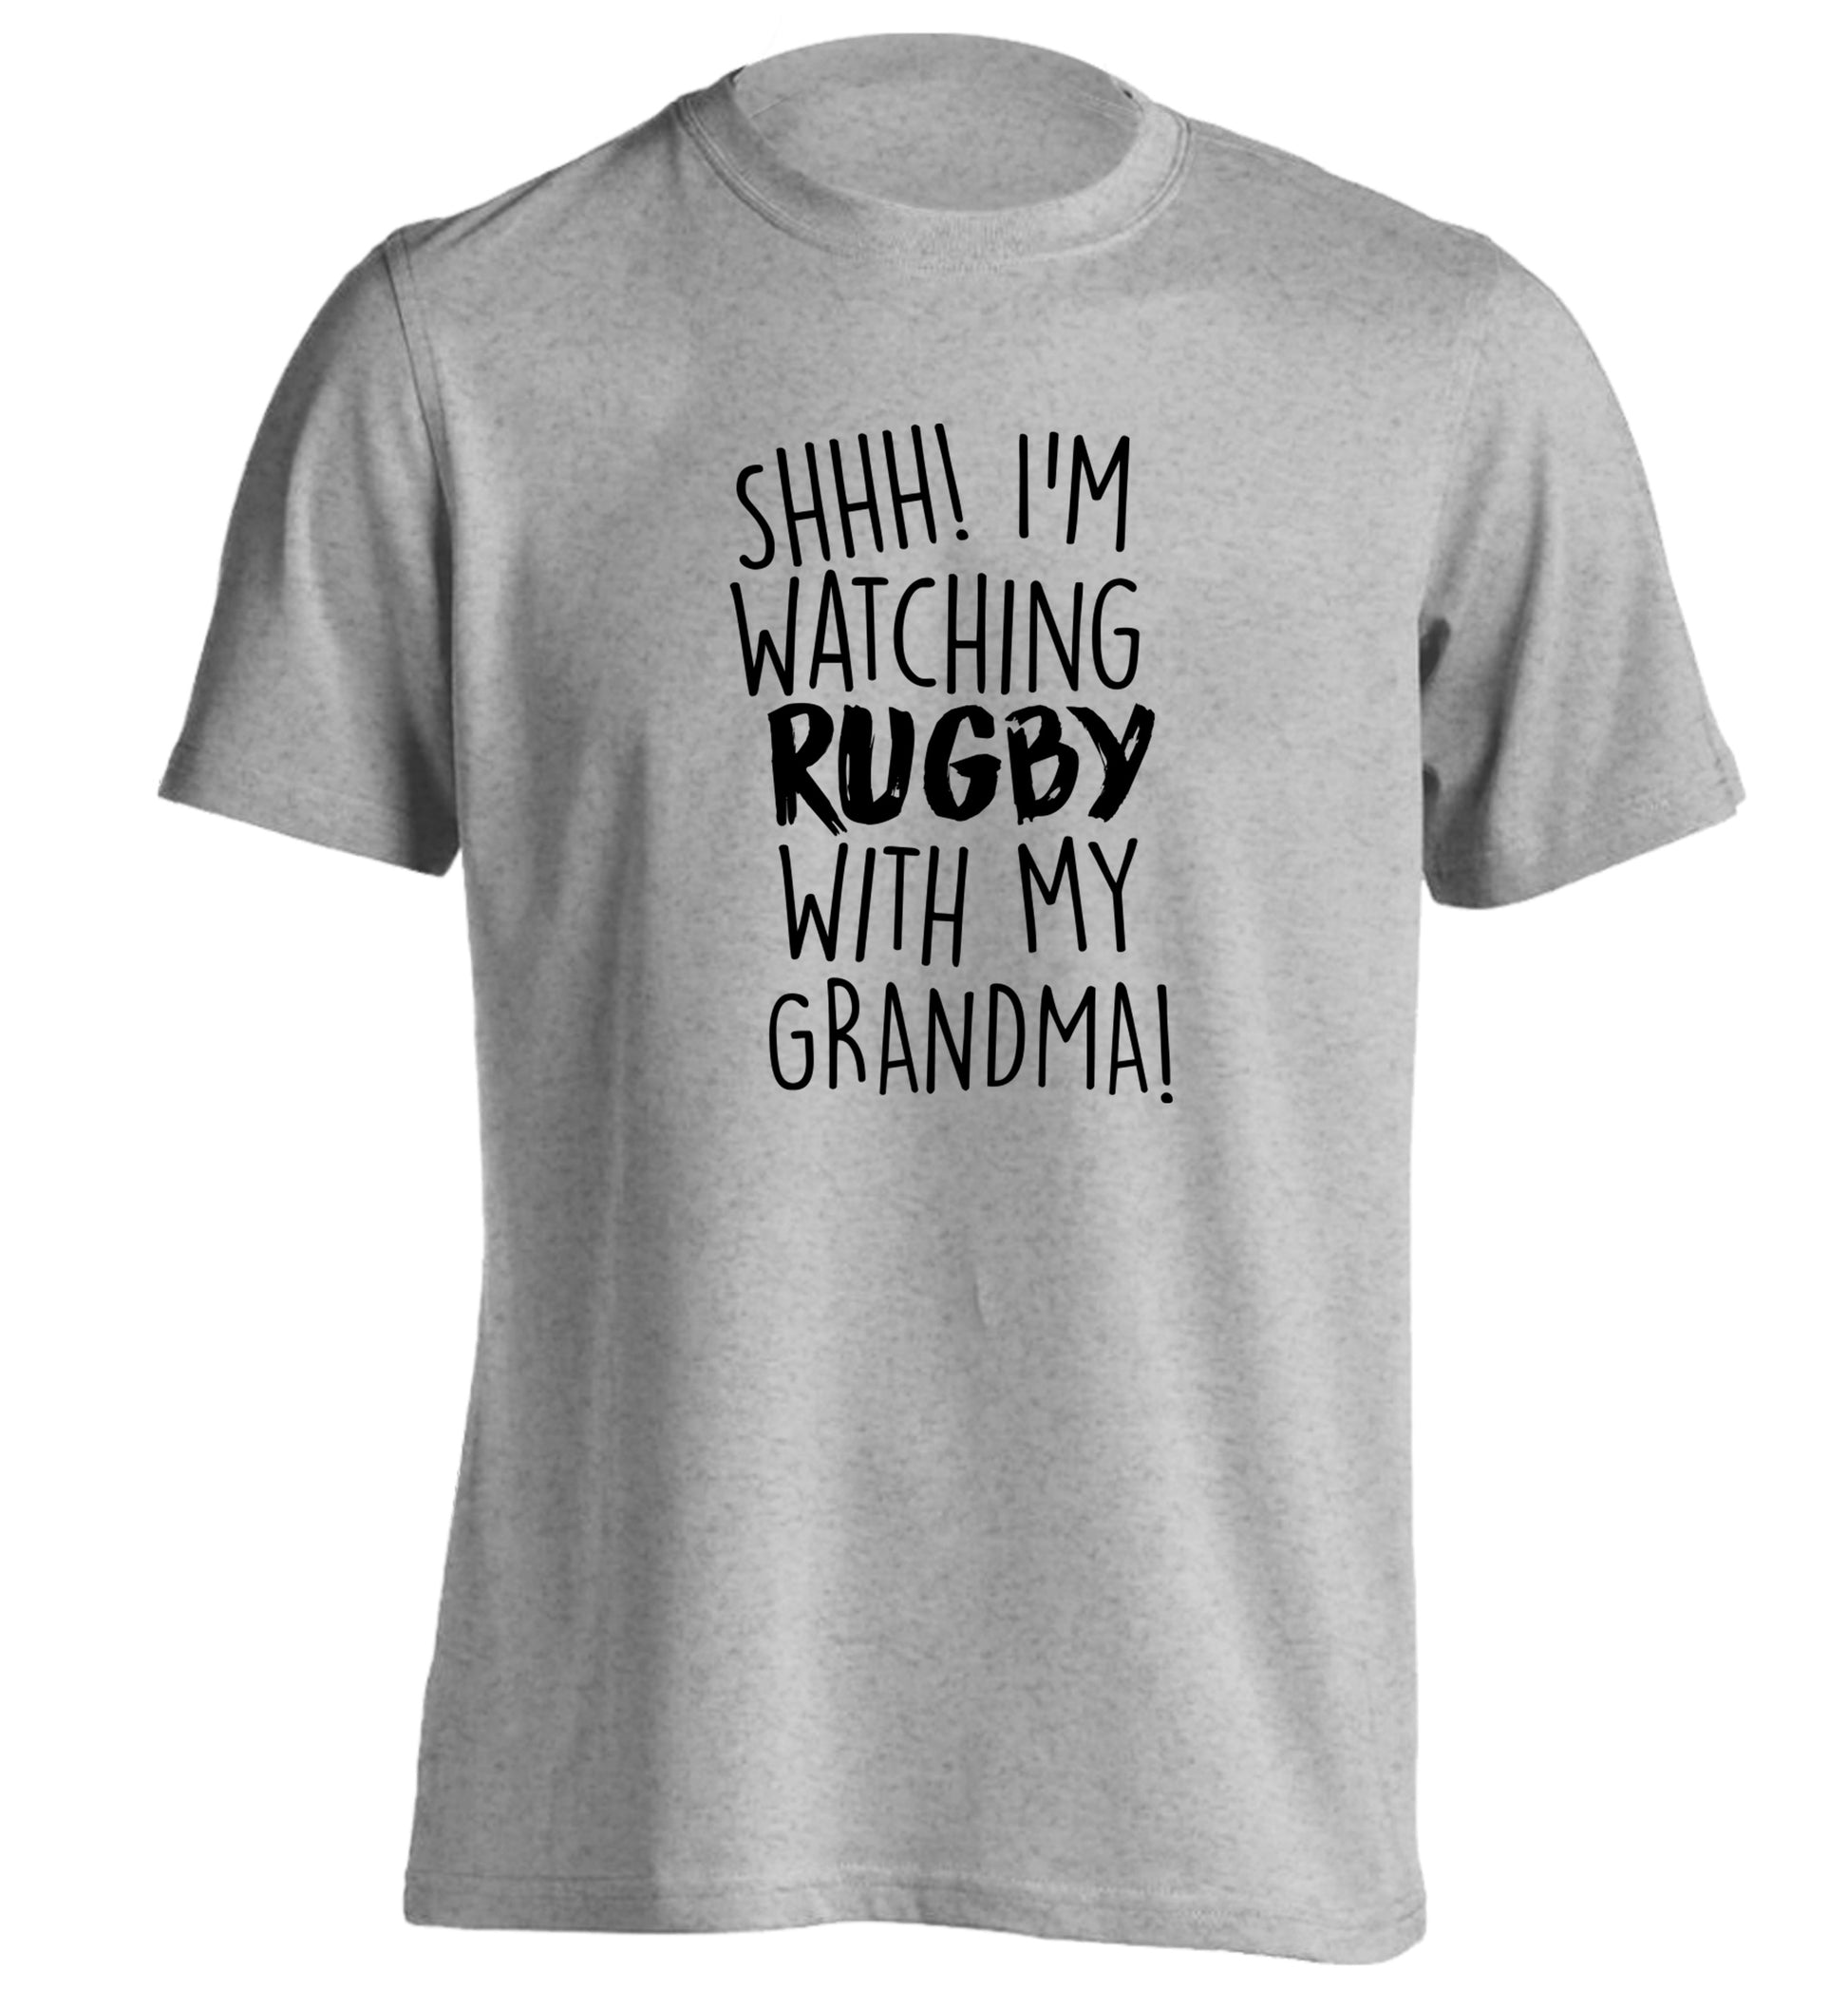 Shh I'm watching rugby with my grandma adults unisex grey Tshirt 2XL